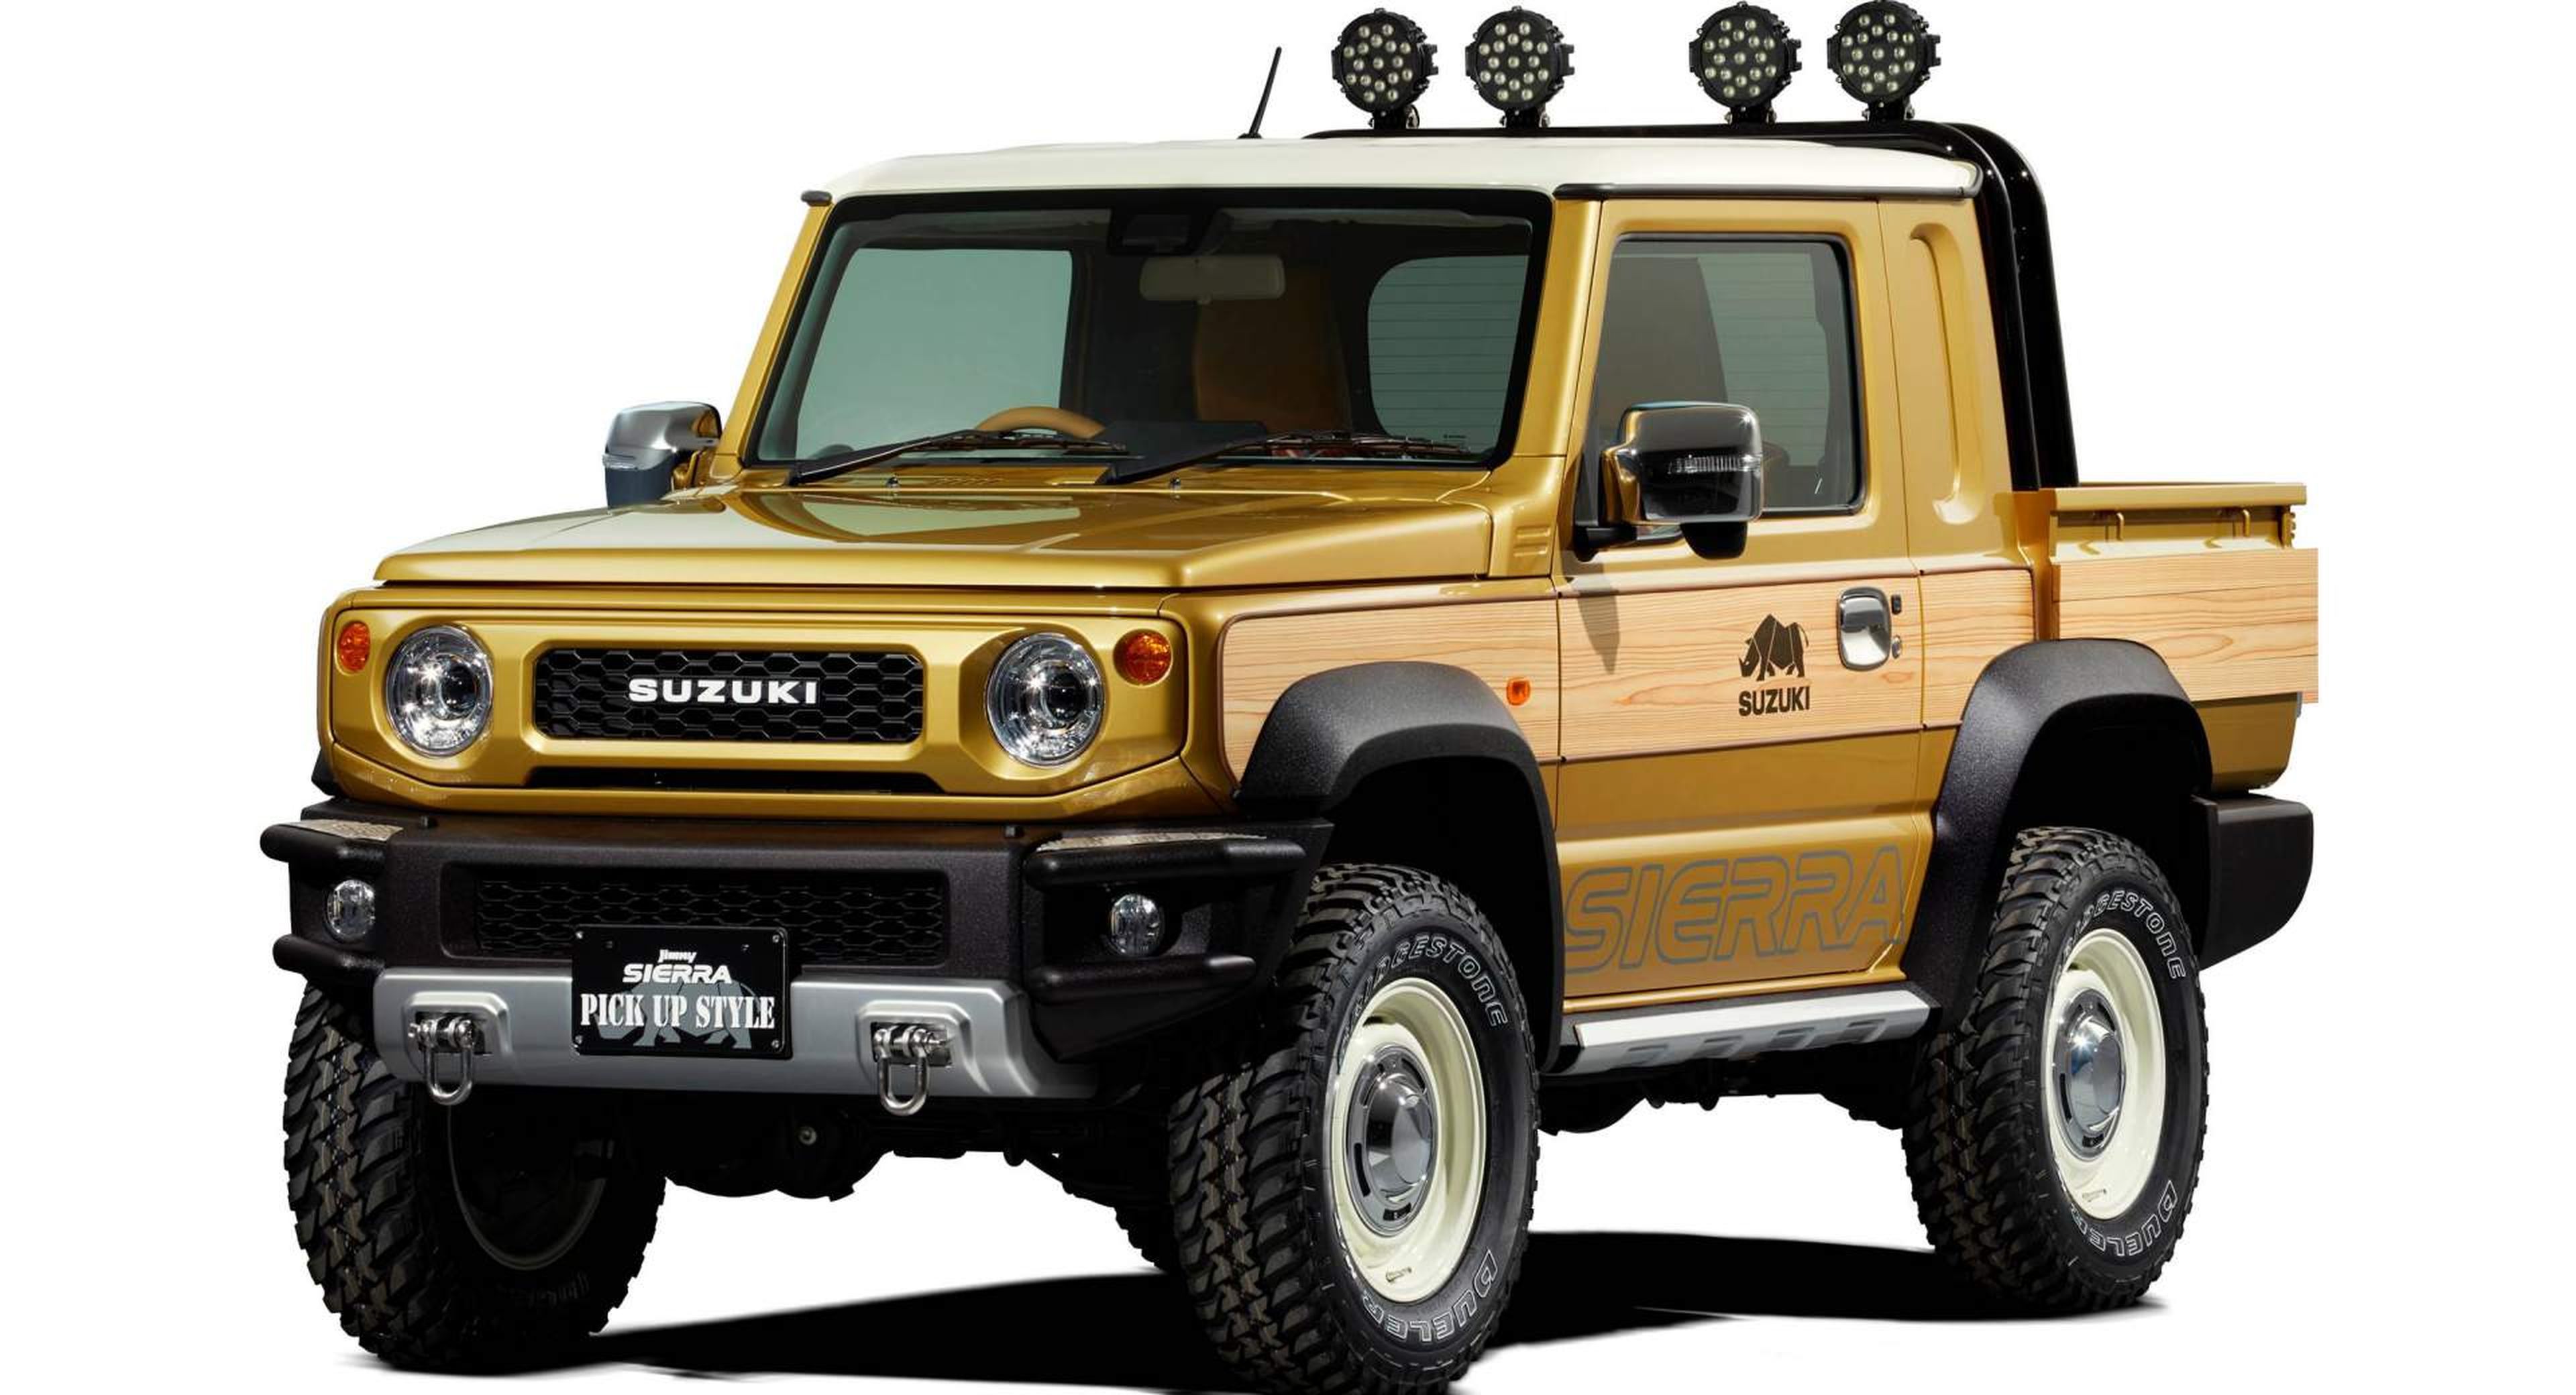 Suzuki transforma el nuevo Jimny en un mini 'pick up